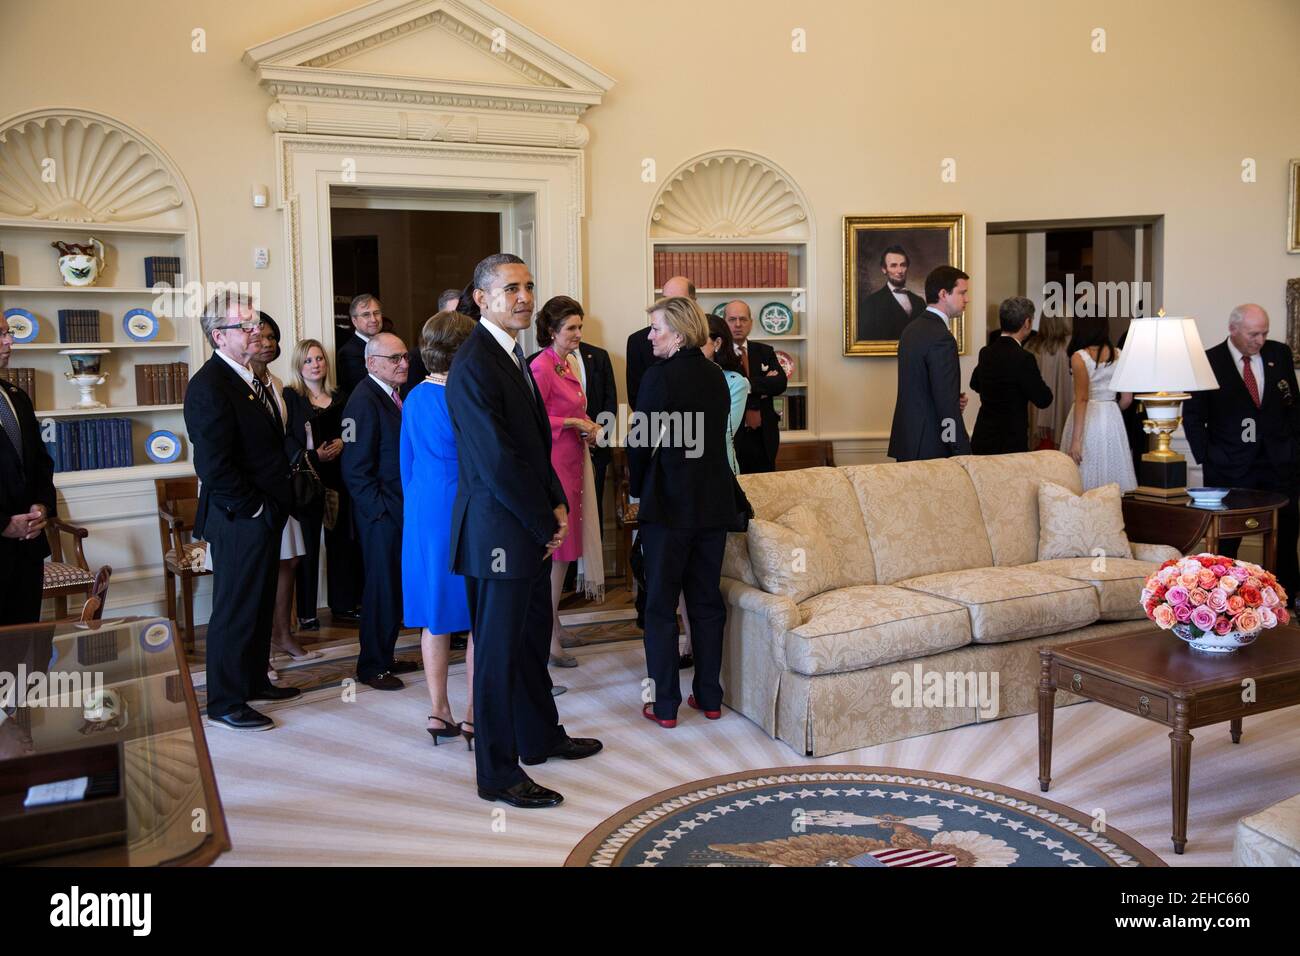 El presidente Barack Obama hace una pausa en una réplica de la Oficina Oval durante un recorrido por la Biblioteca Presidencial George W. Bush y el Museo en el campus de la Universidad Metodista del Sur (SMU) en Dallas, Texas, 25 de abril de 2013. Foto de stock